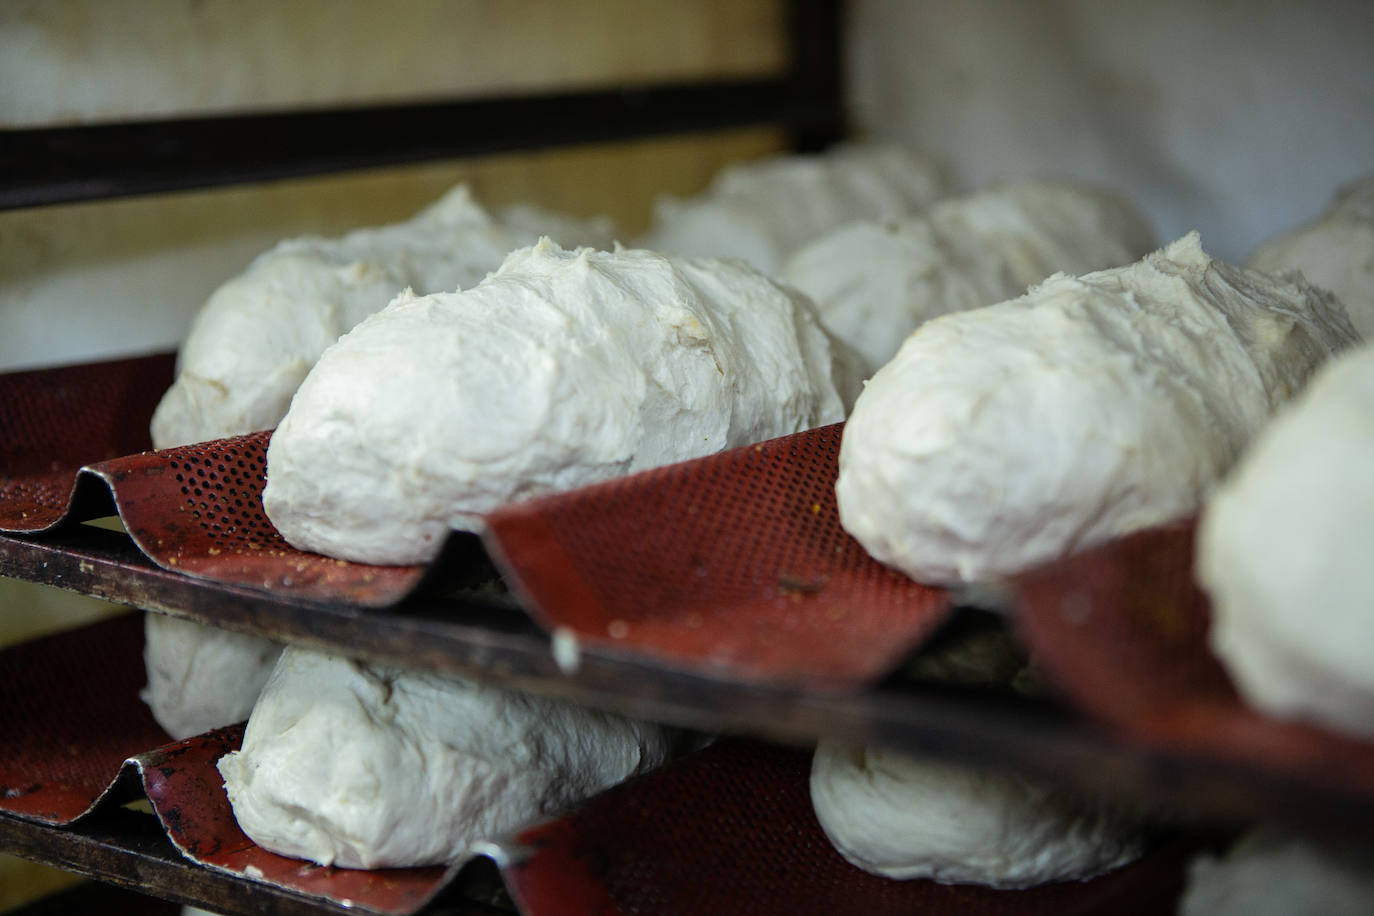  Las panaderías de la Pola elaboran los productos típicos de Comadres